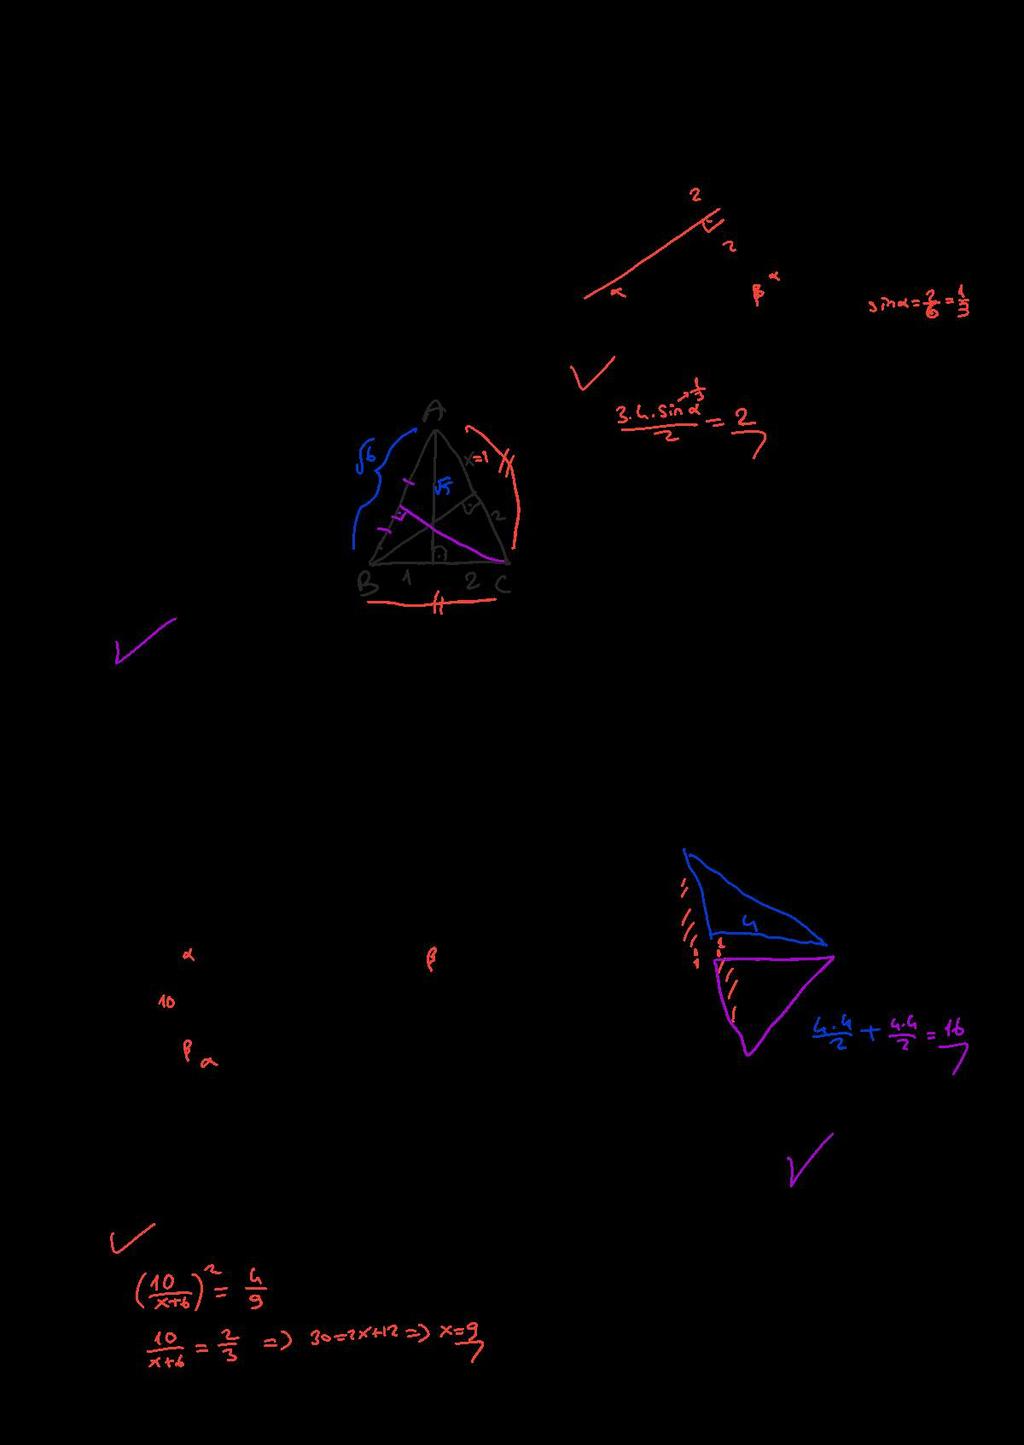 ÜÇG 6. şağıda üçgeninin iki kenarı yatay konumda ayrı ayrı gösterilmiştir. enarların üzerinde mavi renkle gösterilen noktalar o kenara ait yüksekliğin değme noktasıdır.